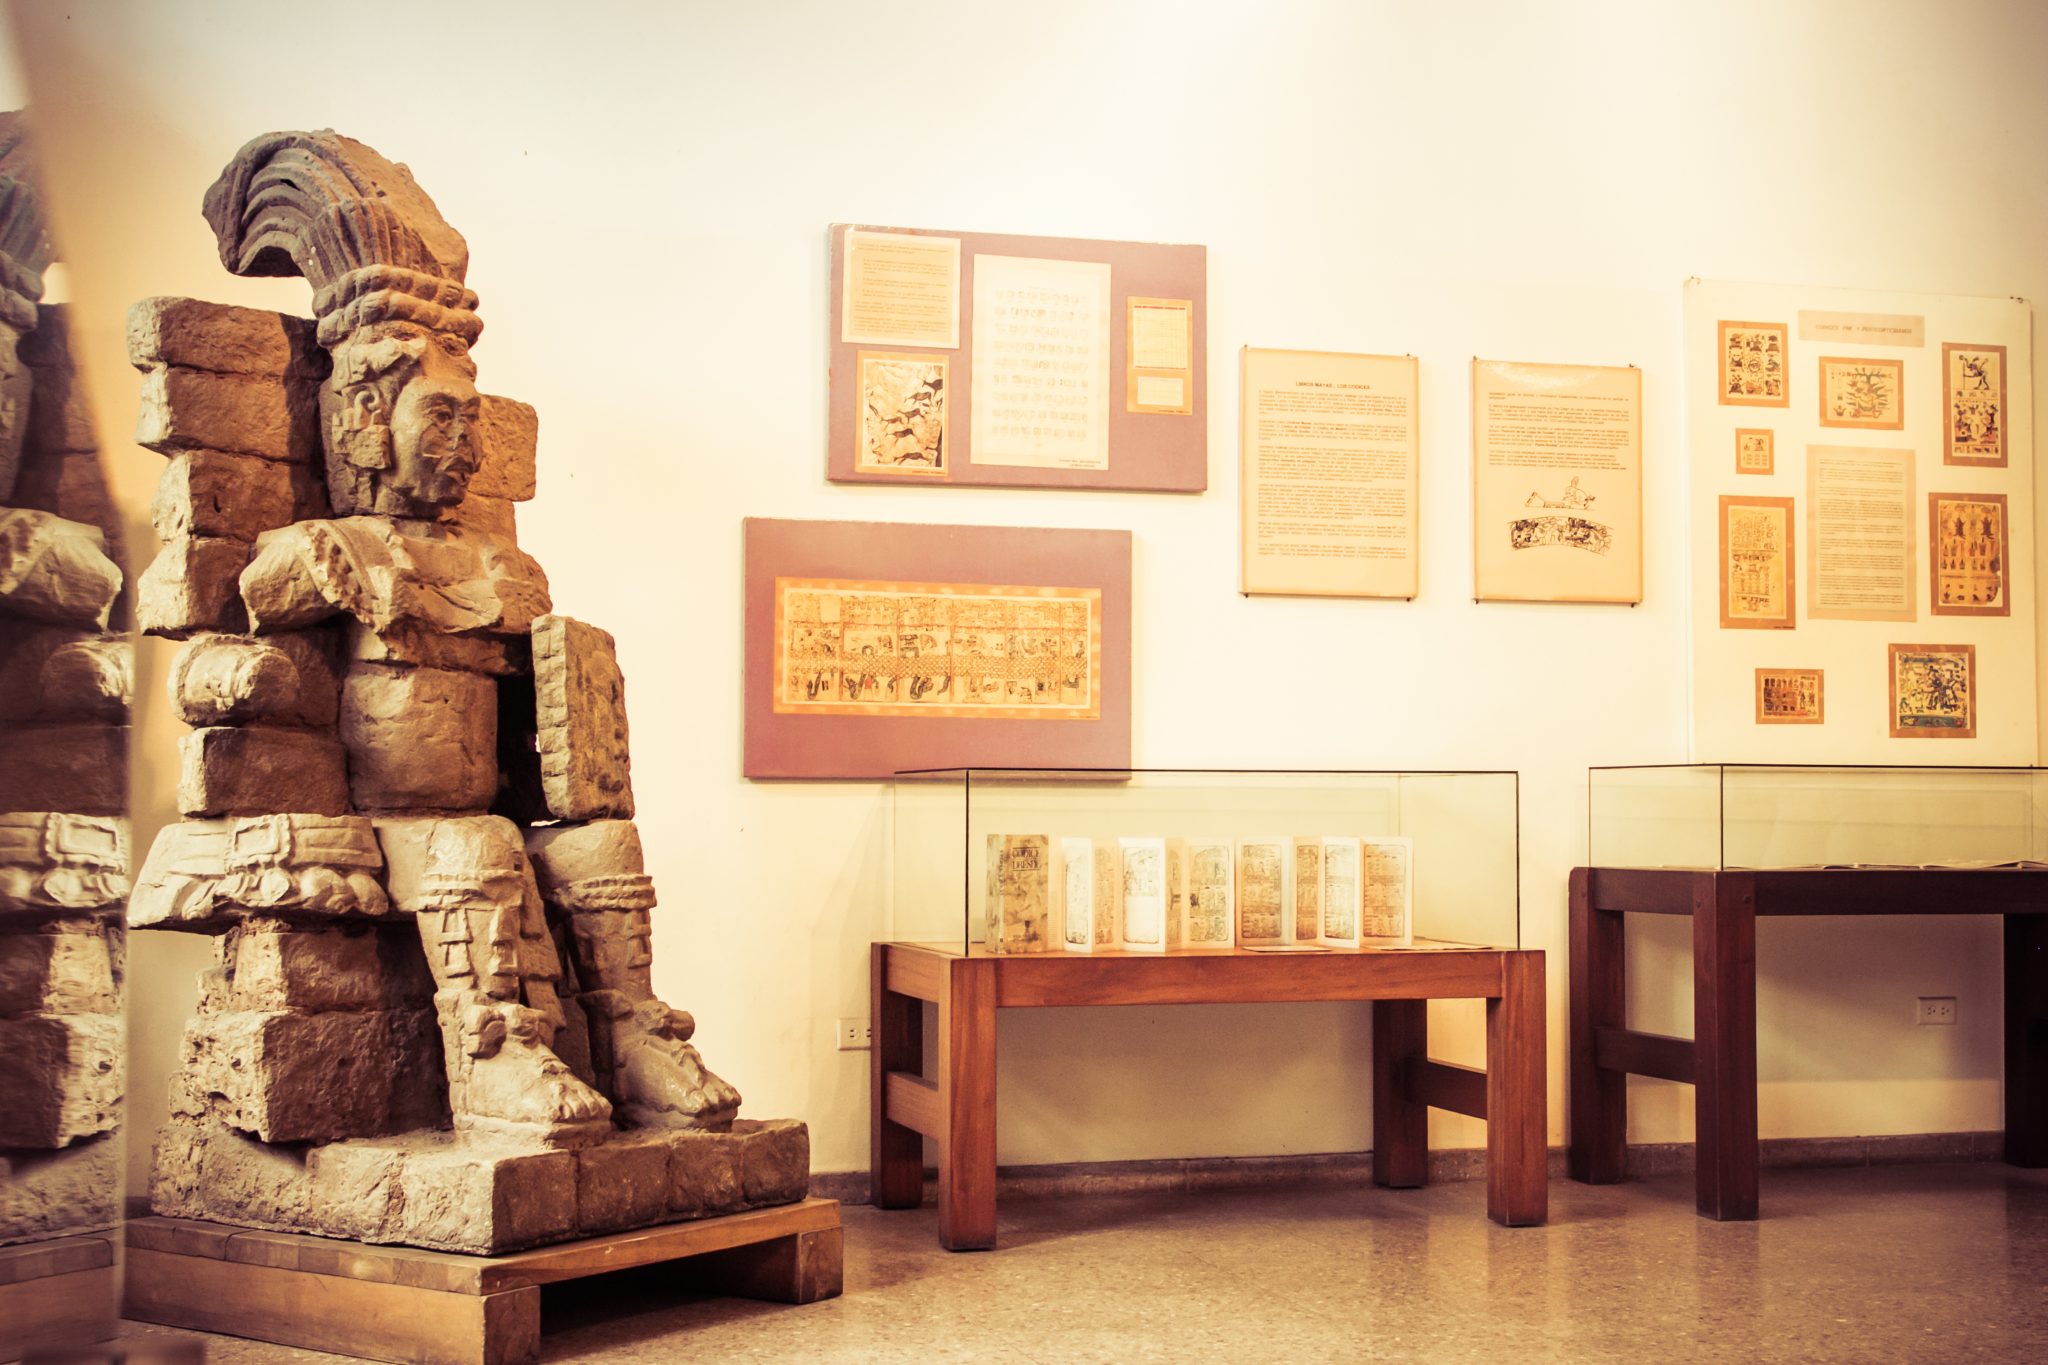 Museo de Antropología e Historia de San Pedro Sula